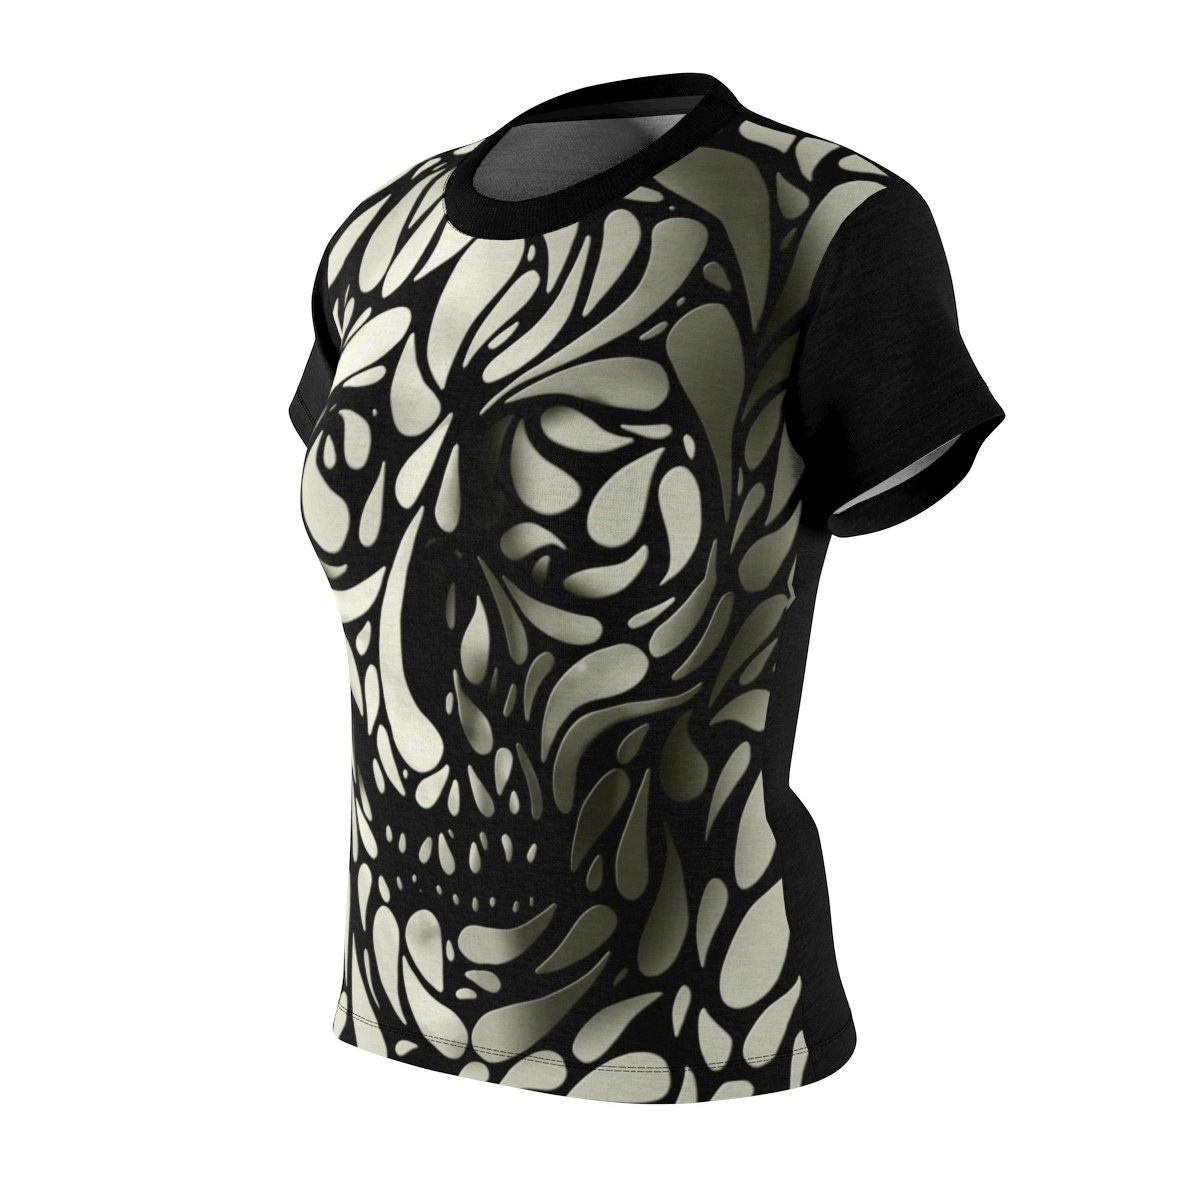 3D Skull Women's T-Shirt,  All Over Print Skull Womens Shirt, Gothic Sugar Skull Gift For Her, Skull Pattern Shirt